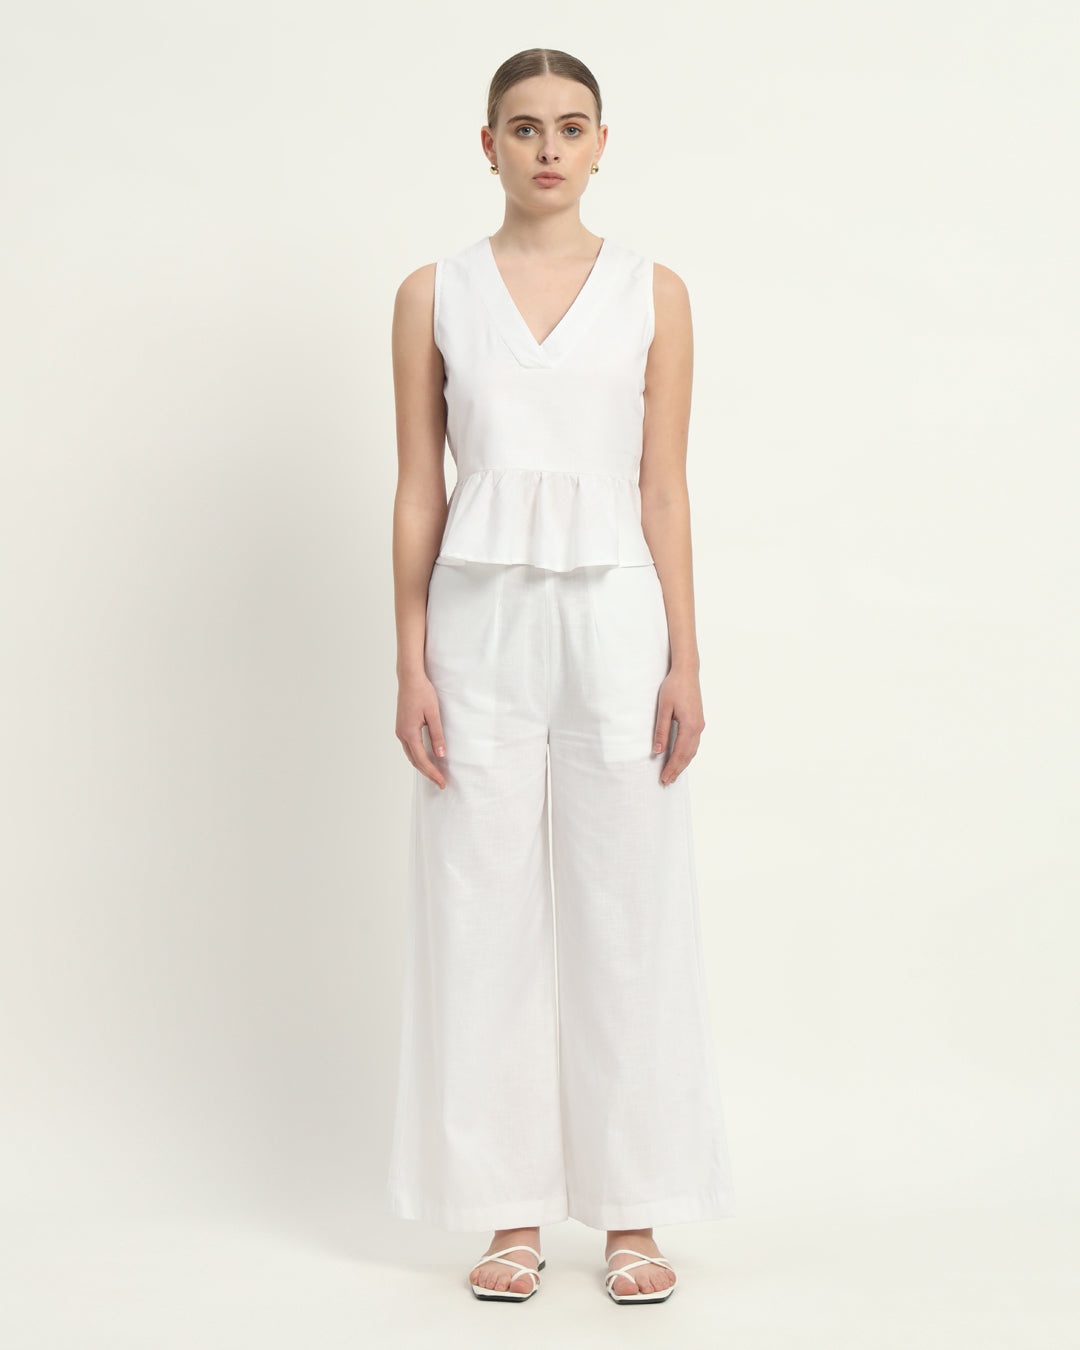 Pants Matching Set- White Linen Posh Peplum